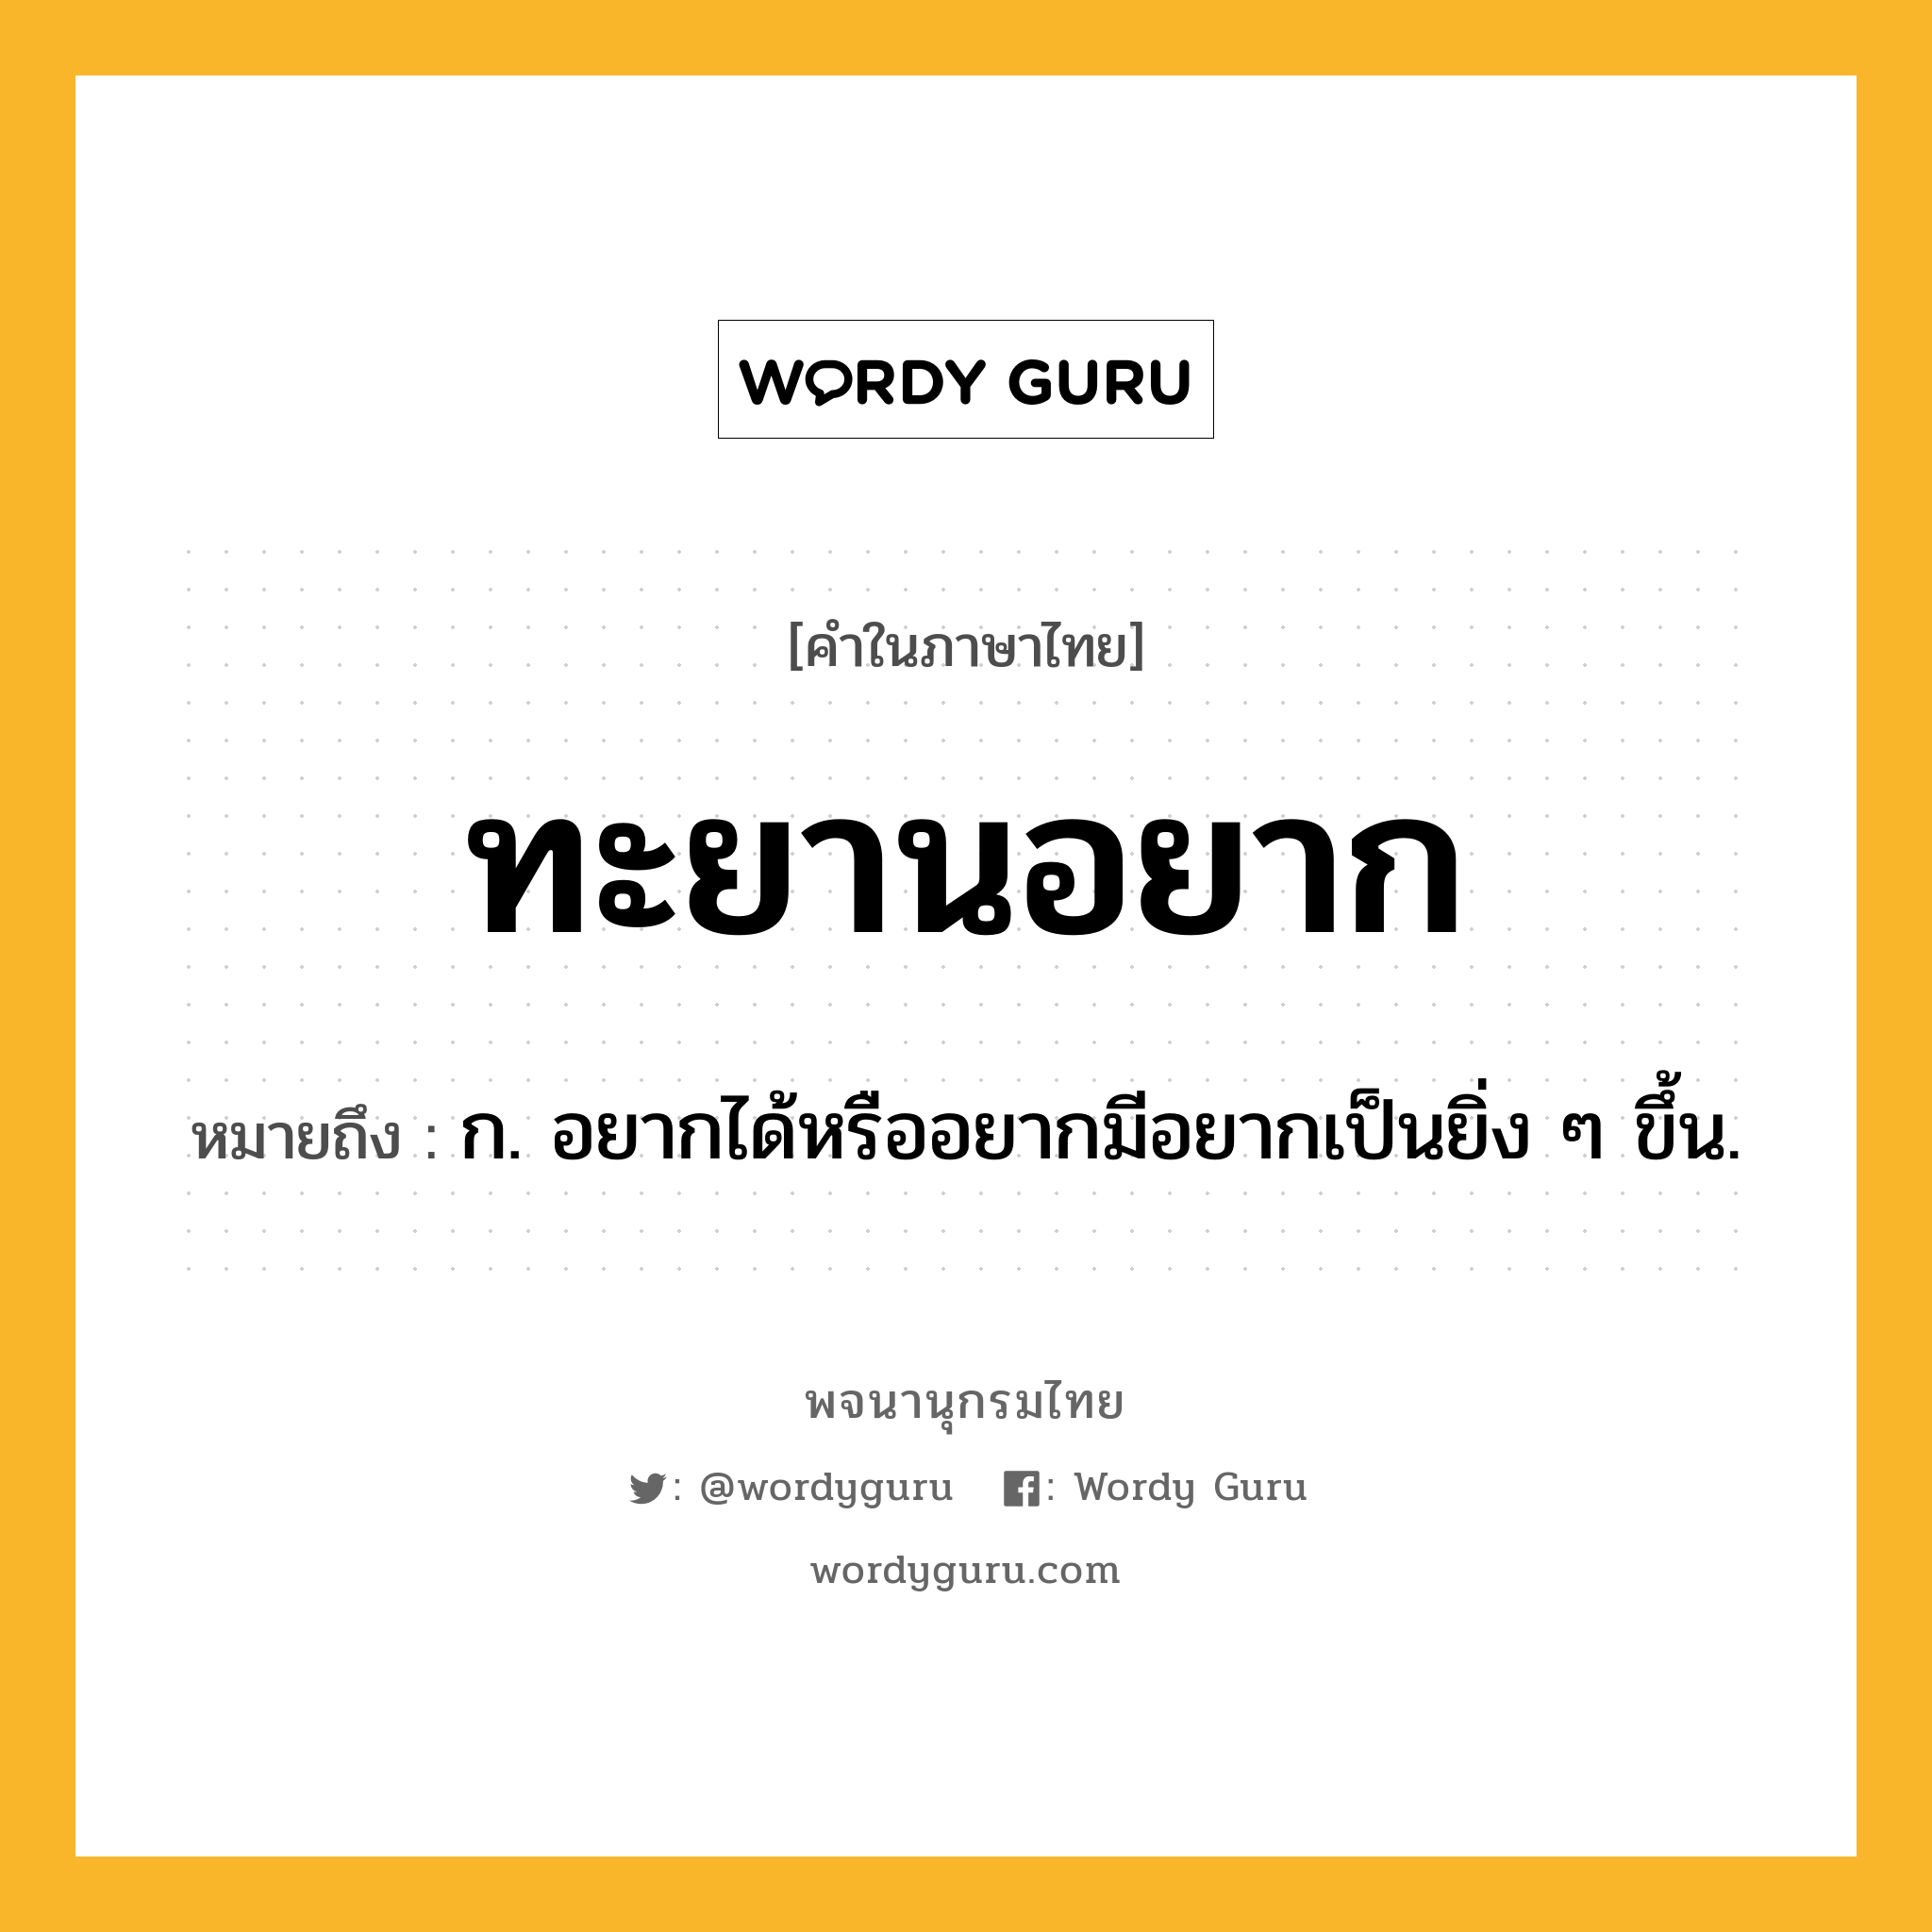 ทะยานอยาก หมายถึงอะไร?, คำในภาษาไทย ทะยานอยาก หมายถึง ก. อยากได้หรืออยากมีอยากเป็นยิ่ง ๆ ขึ้น.